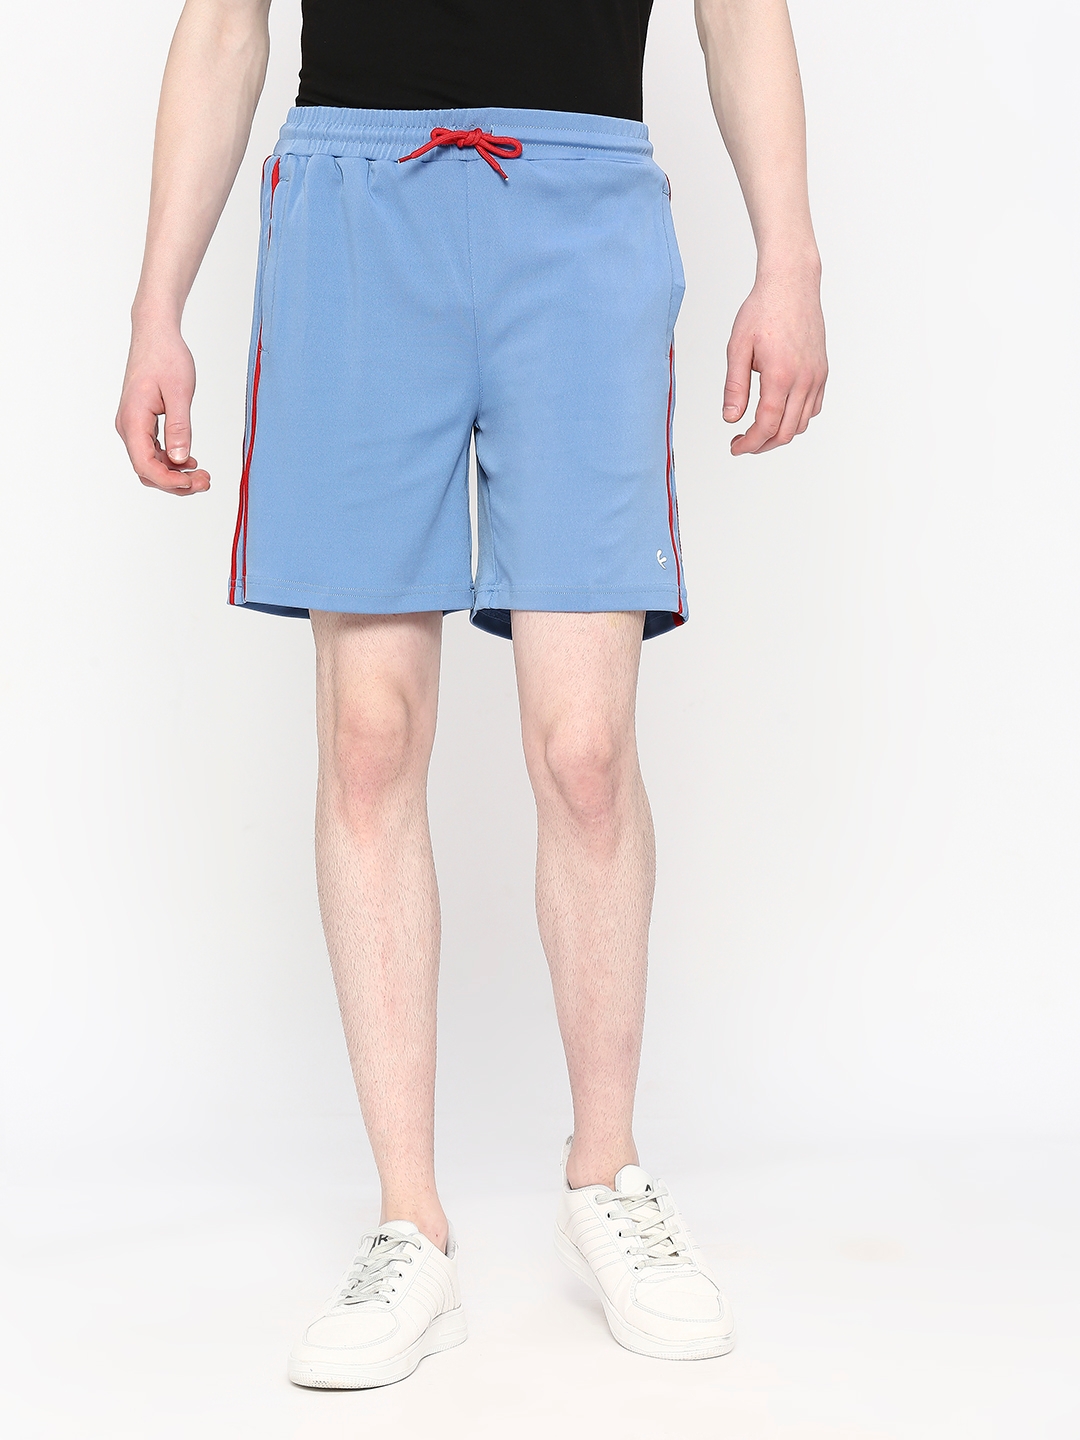 FITZ | Men's  Slim Fit Cotton Blue Shorts 0